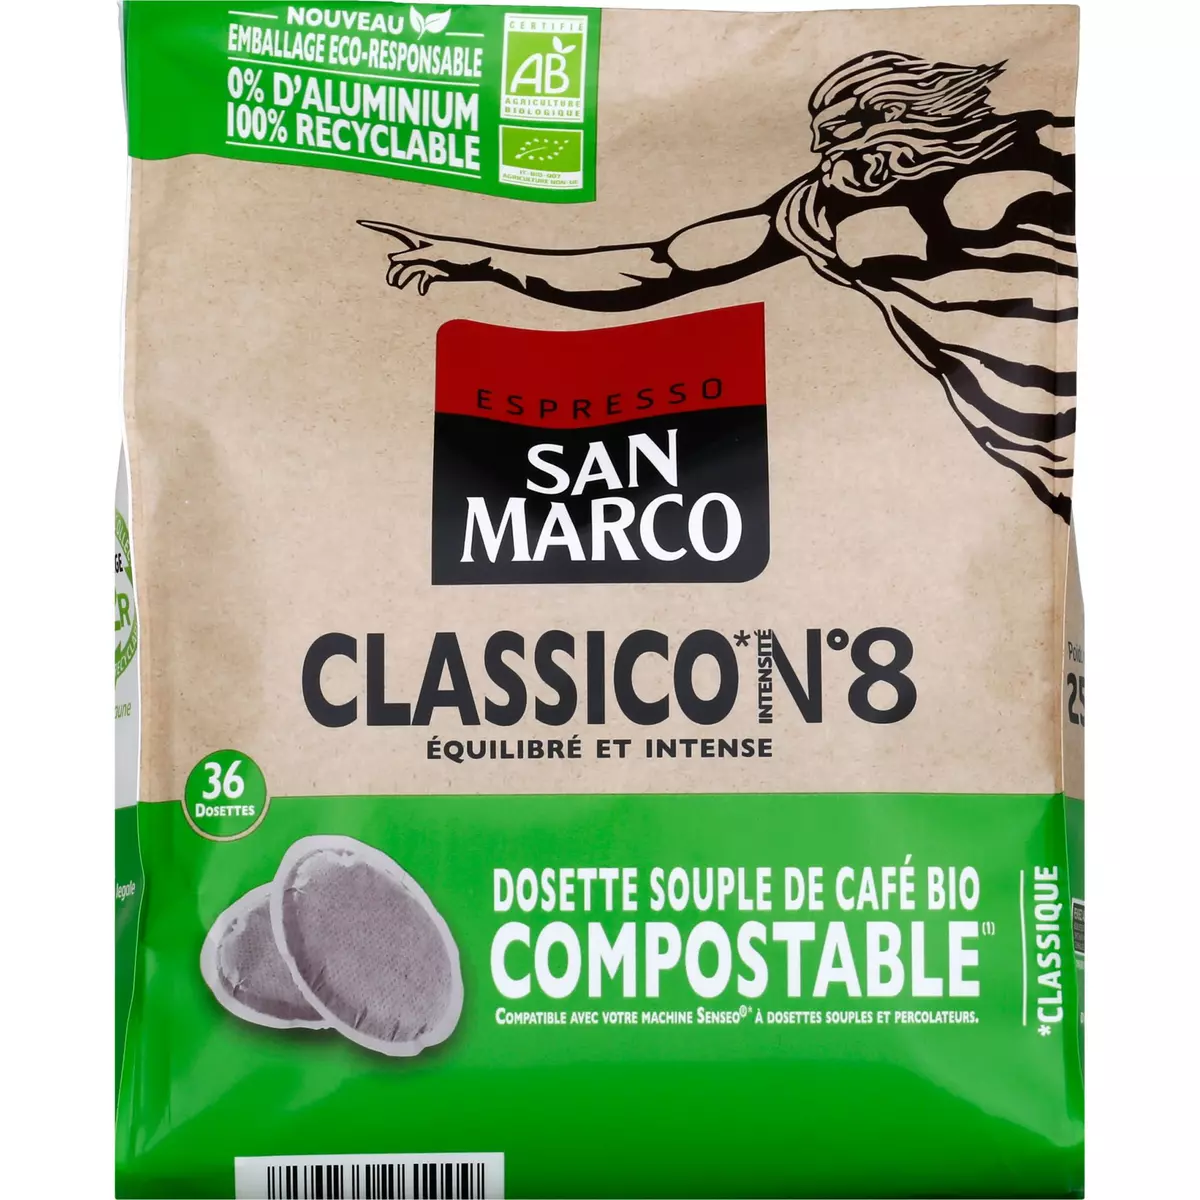 SAN MARCO Dosettes souples de café classique bio compostables 36 dosettes 250g